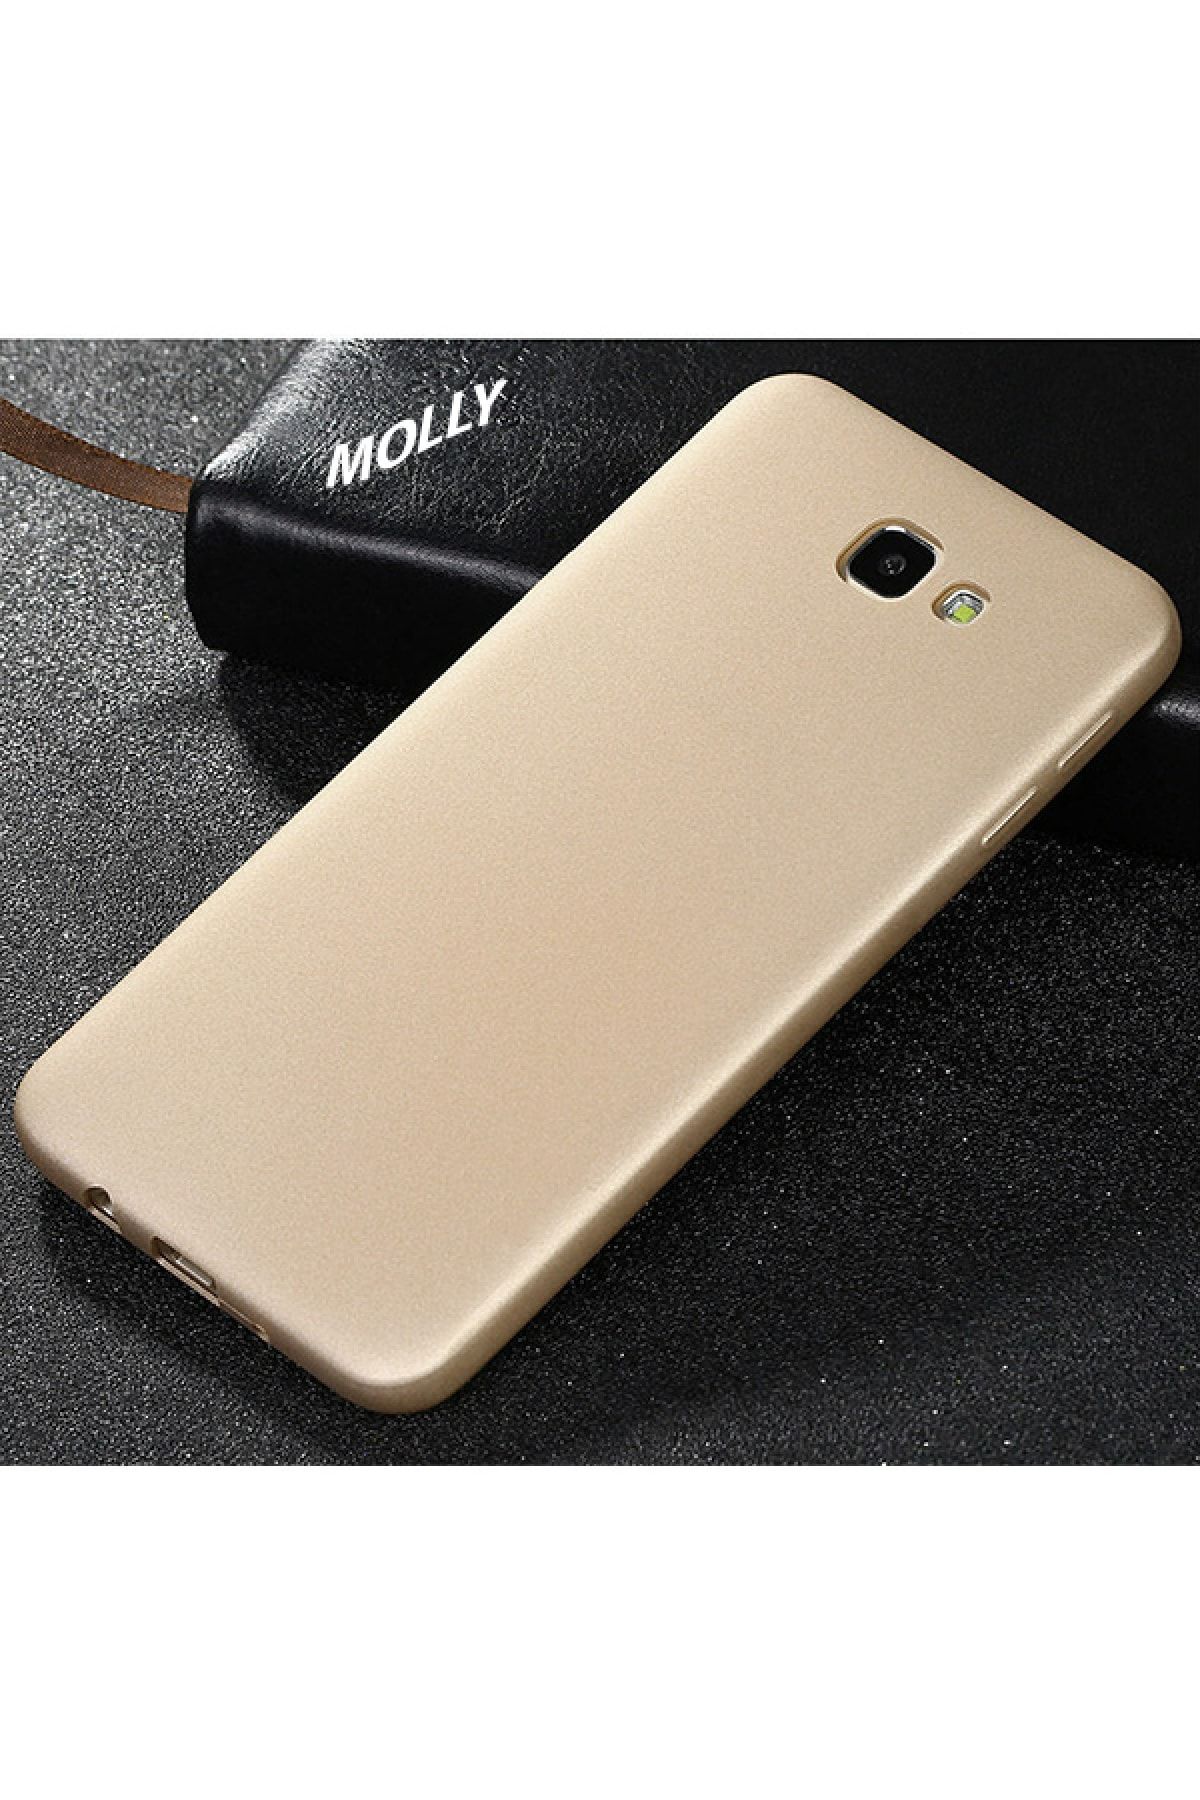 Molly Galaxy J7 Prime 2 Uyumlu Gold Mat Silikon Kılıf